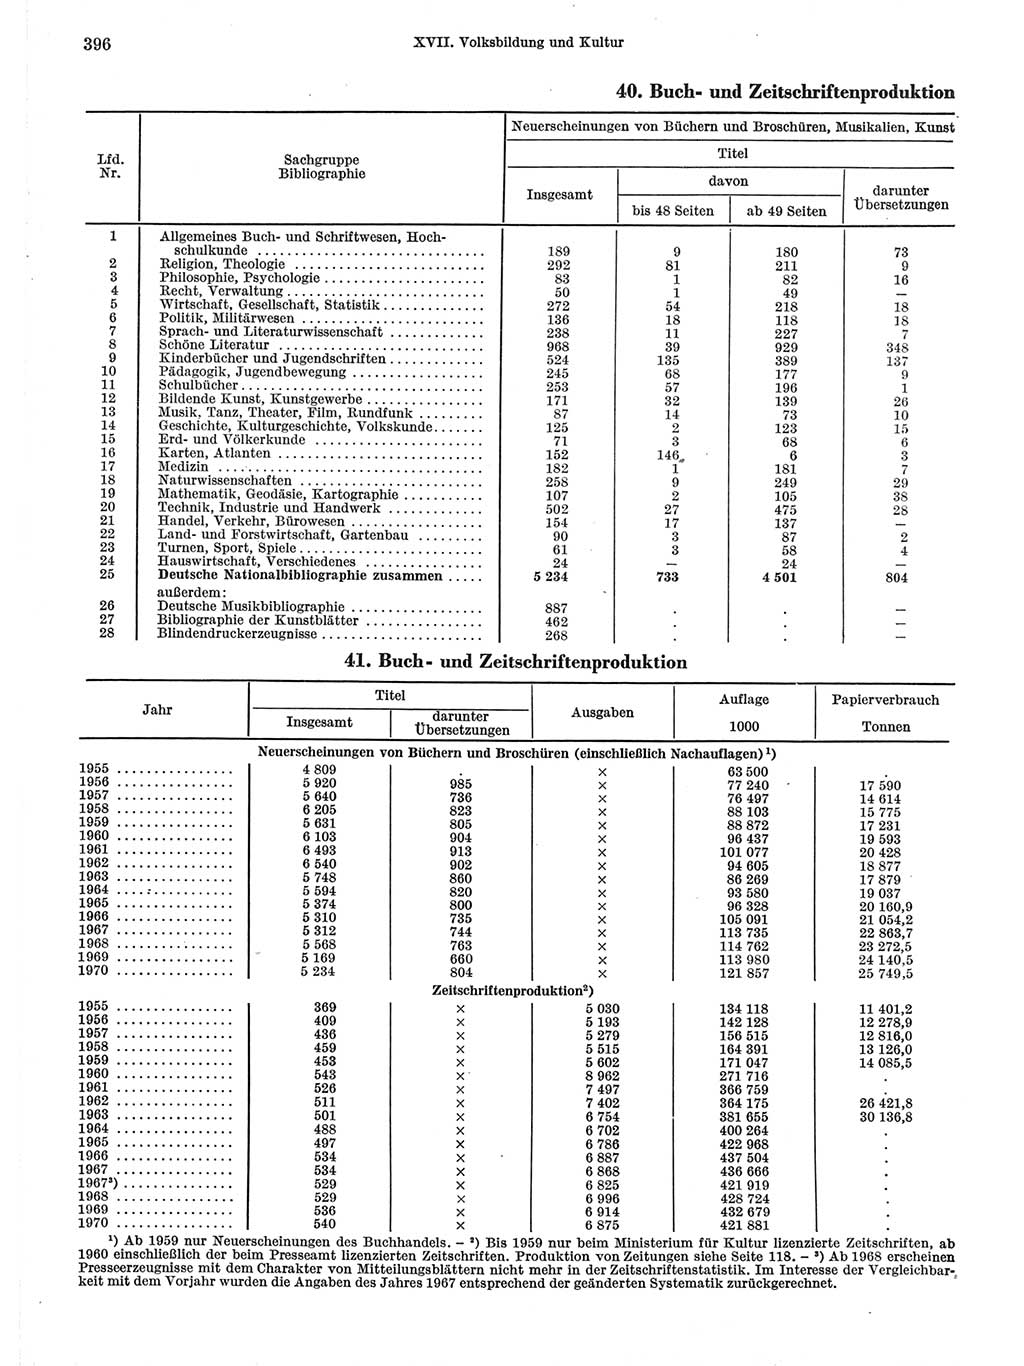 Statistisches Jahrbuch der Deutschen Demokratischen Republik (DDR) 1971, Seite 396 (Stat. Jb. DDR 1971, S. 396)